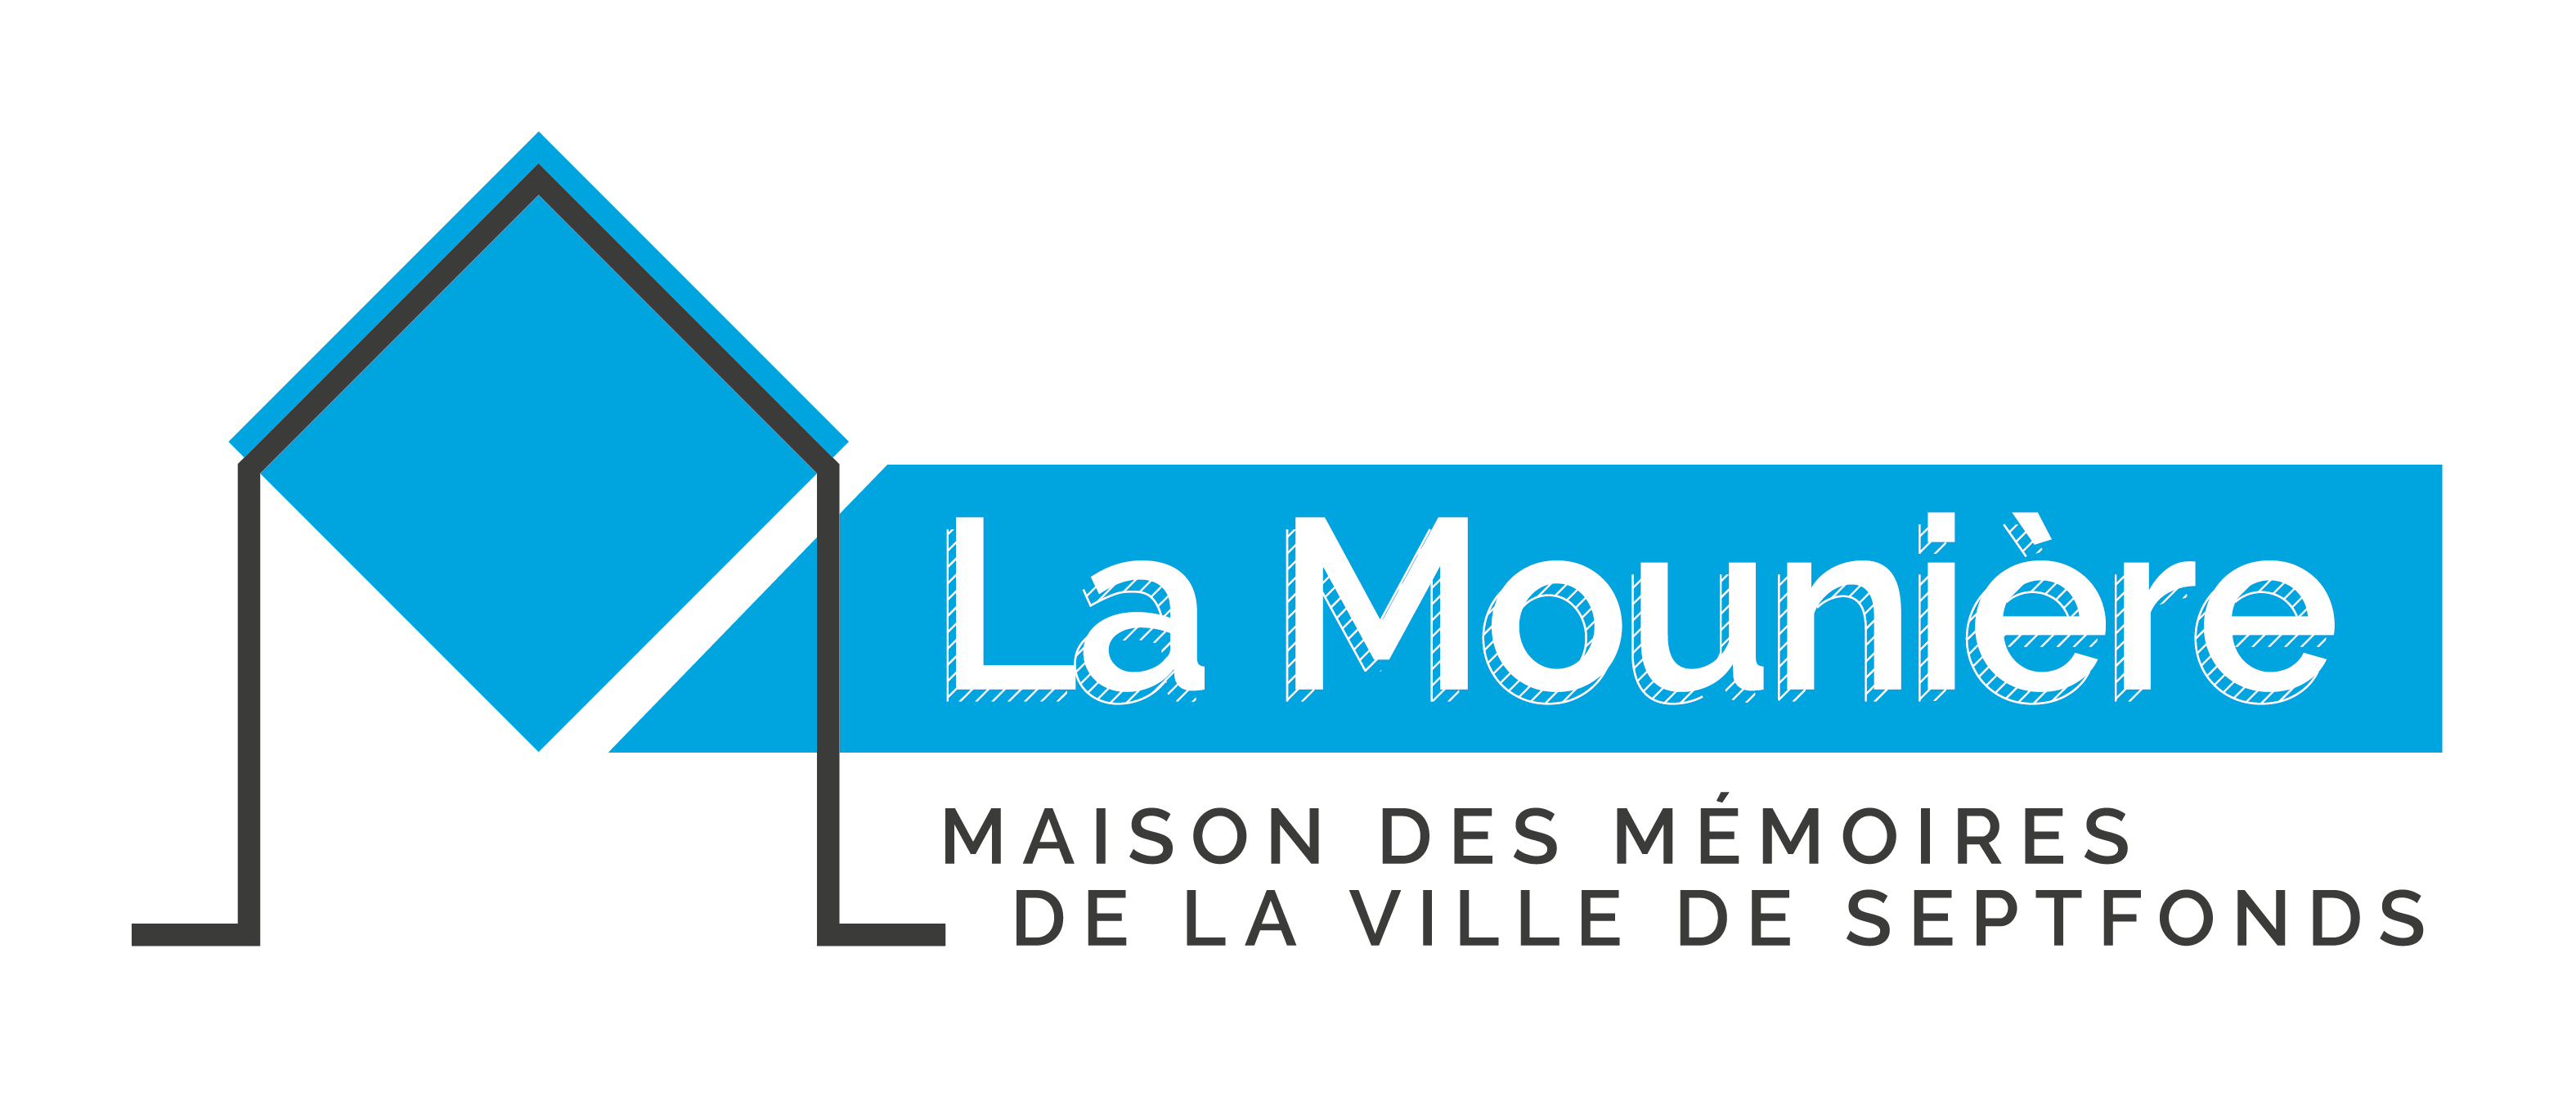 La Mounière